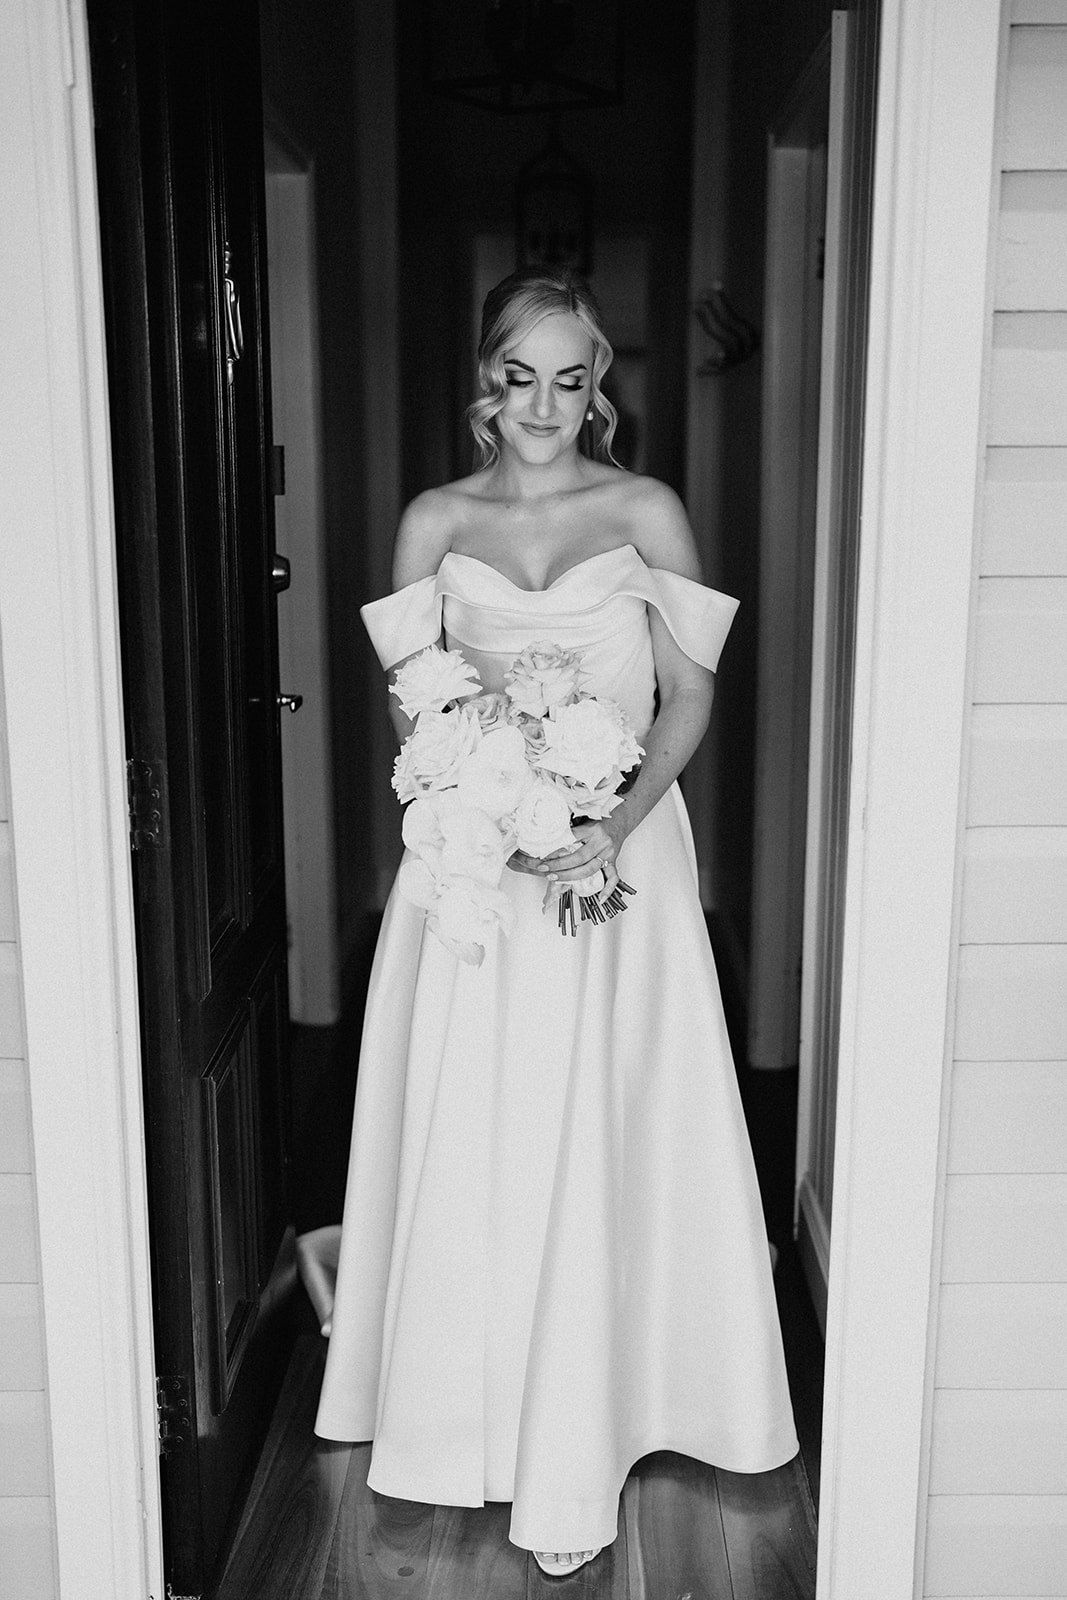 Bride standing in doorway holding flowers